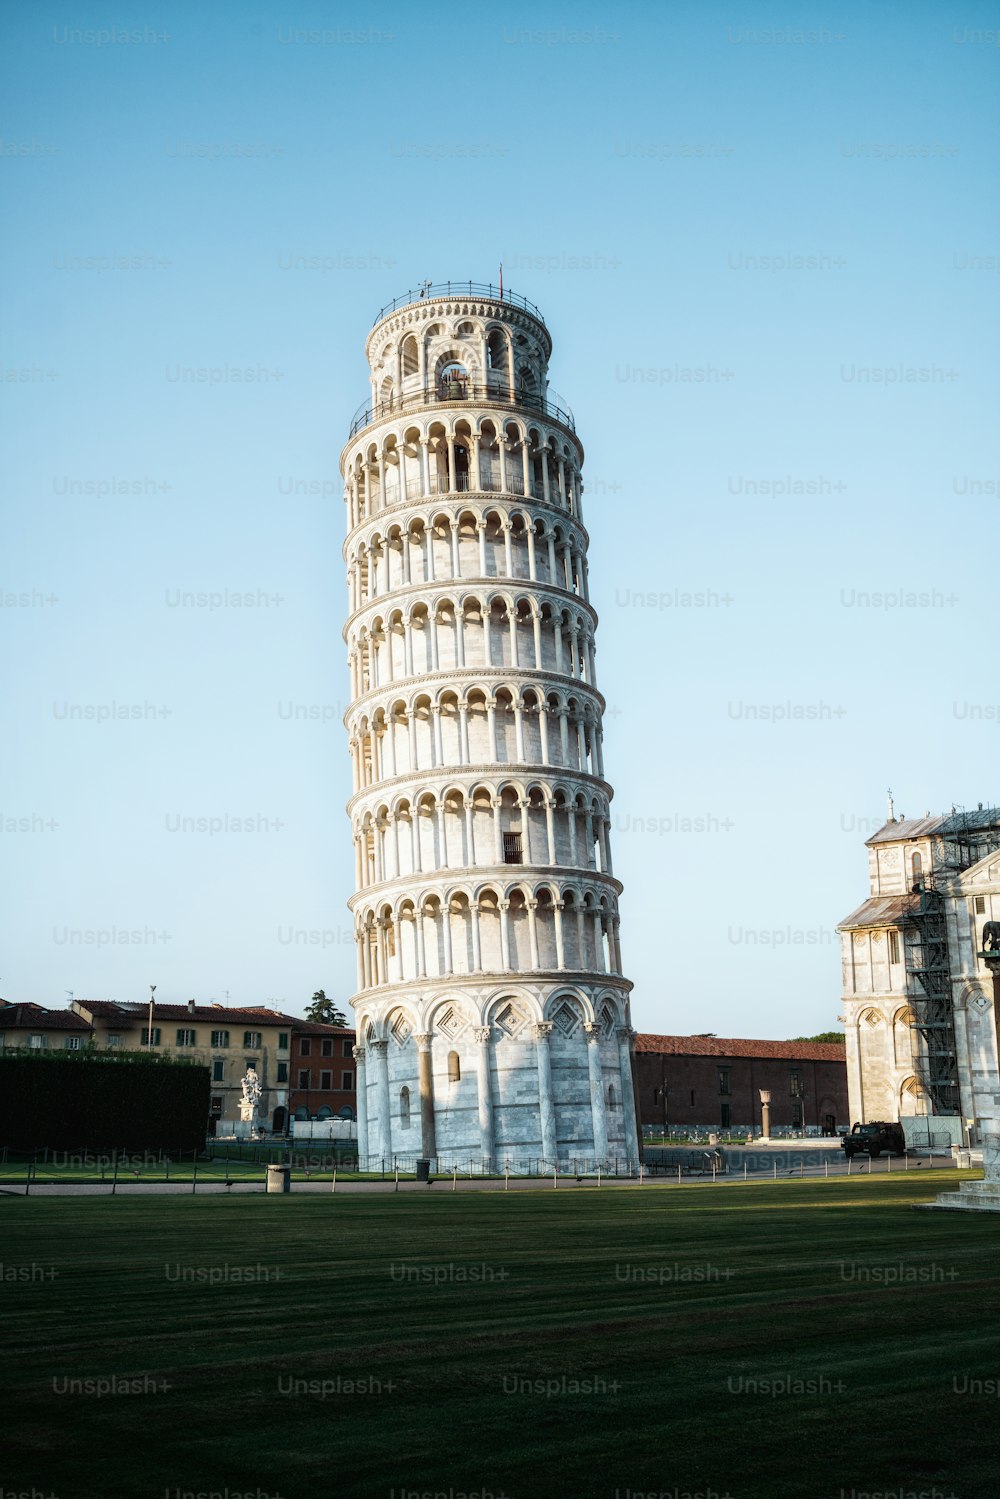 Torre Pendente di Pisa a Pisa, Italia - Torre Pendente di Pisa conosciuta in tutto il mondo per la sua inclinazione involontaria e famosa destinazione turistica dell'Italia. Si trova vicino al Duomo di Pisa.